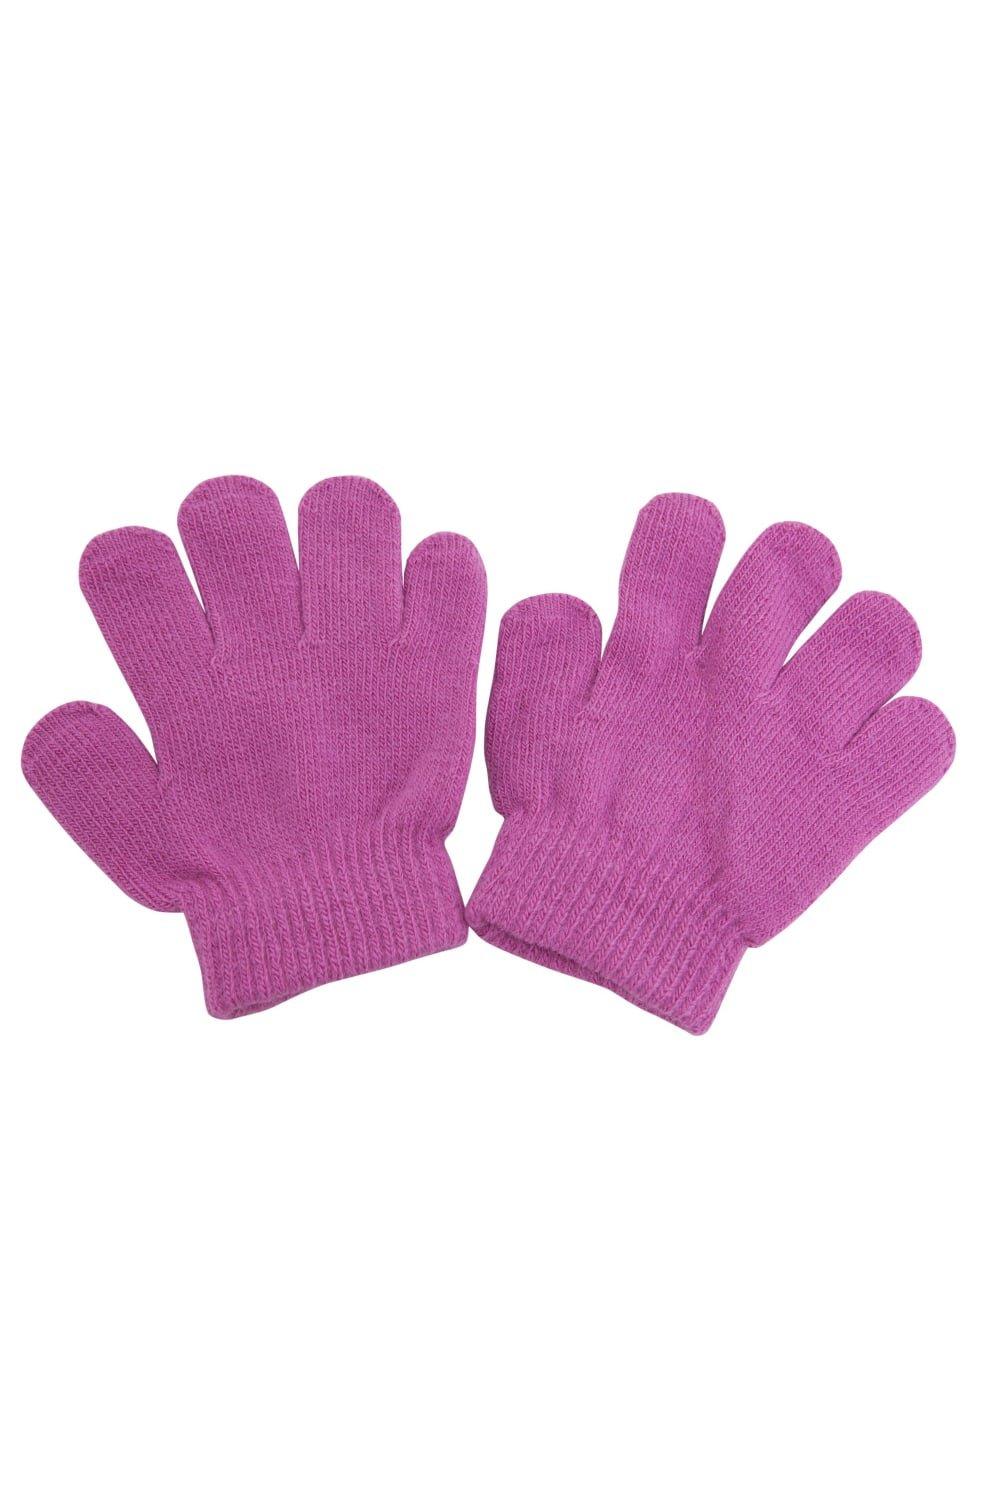 Зимние волшебные перчатки Universal Textiles, розовый распродажа термовязаные зимние перчатки universal textiles черный